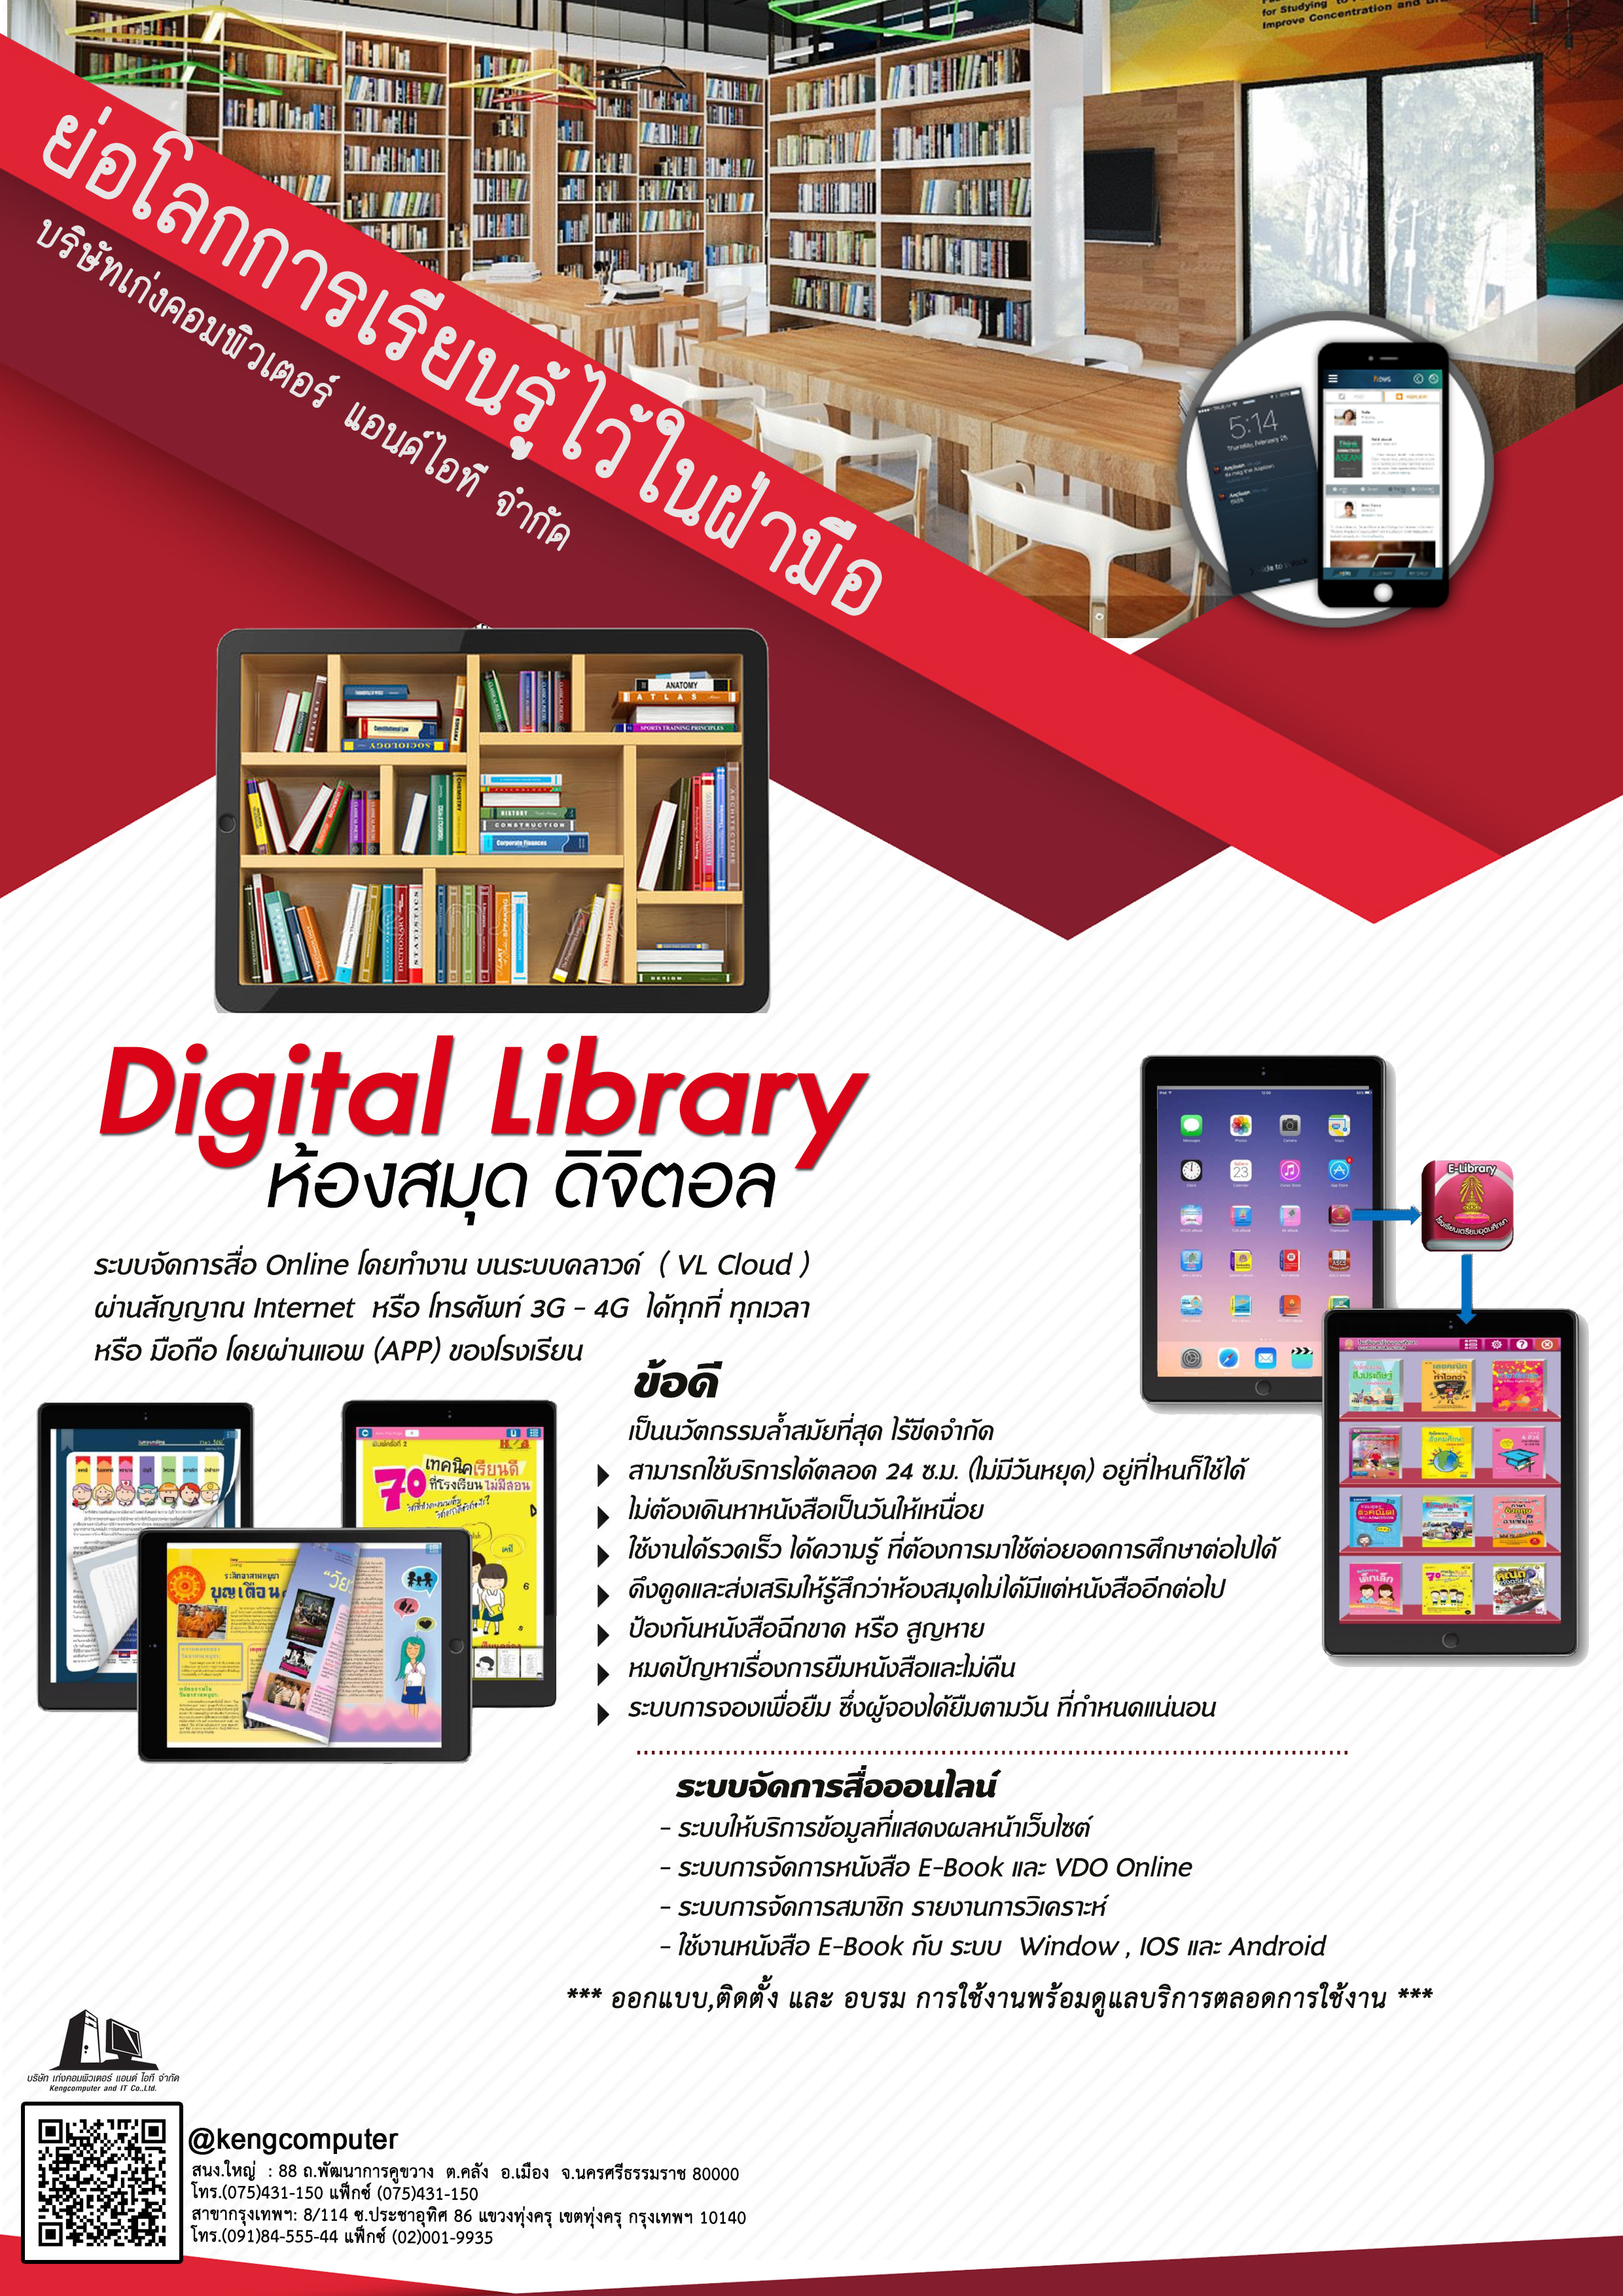 ห้องสมุดดิจิตอลออนไลน์ไทยแลนด์4.0